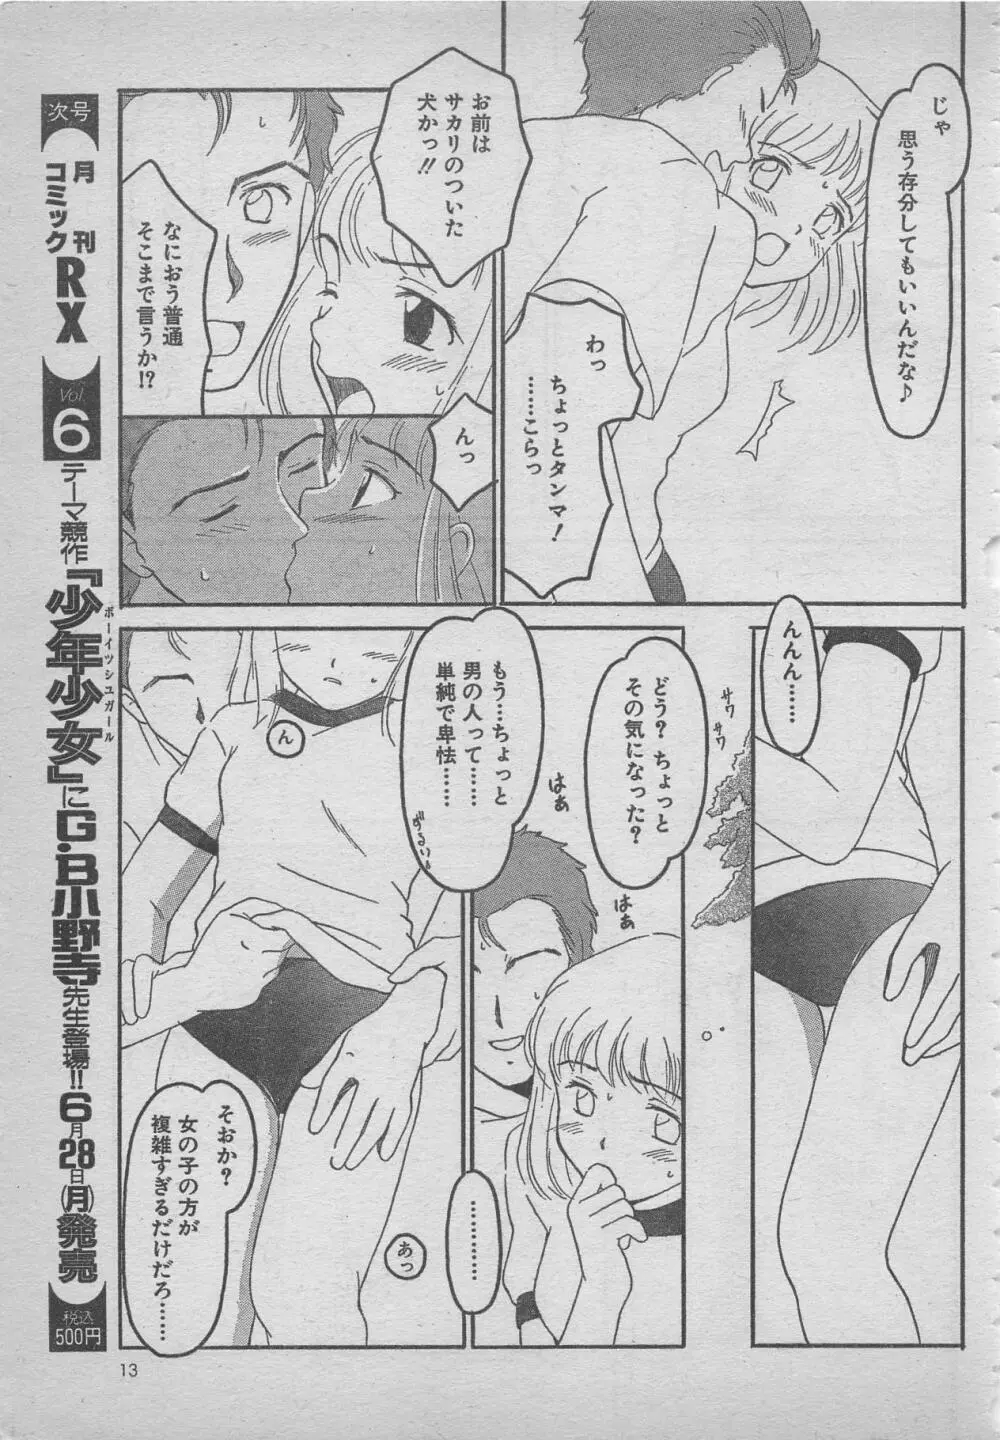 comic RX 1999 vol.5 13ページ